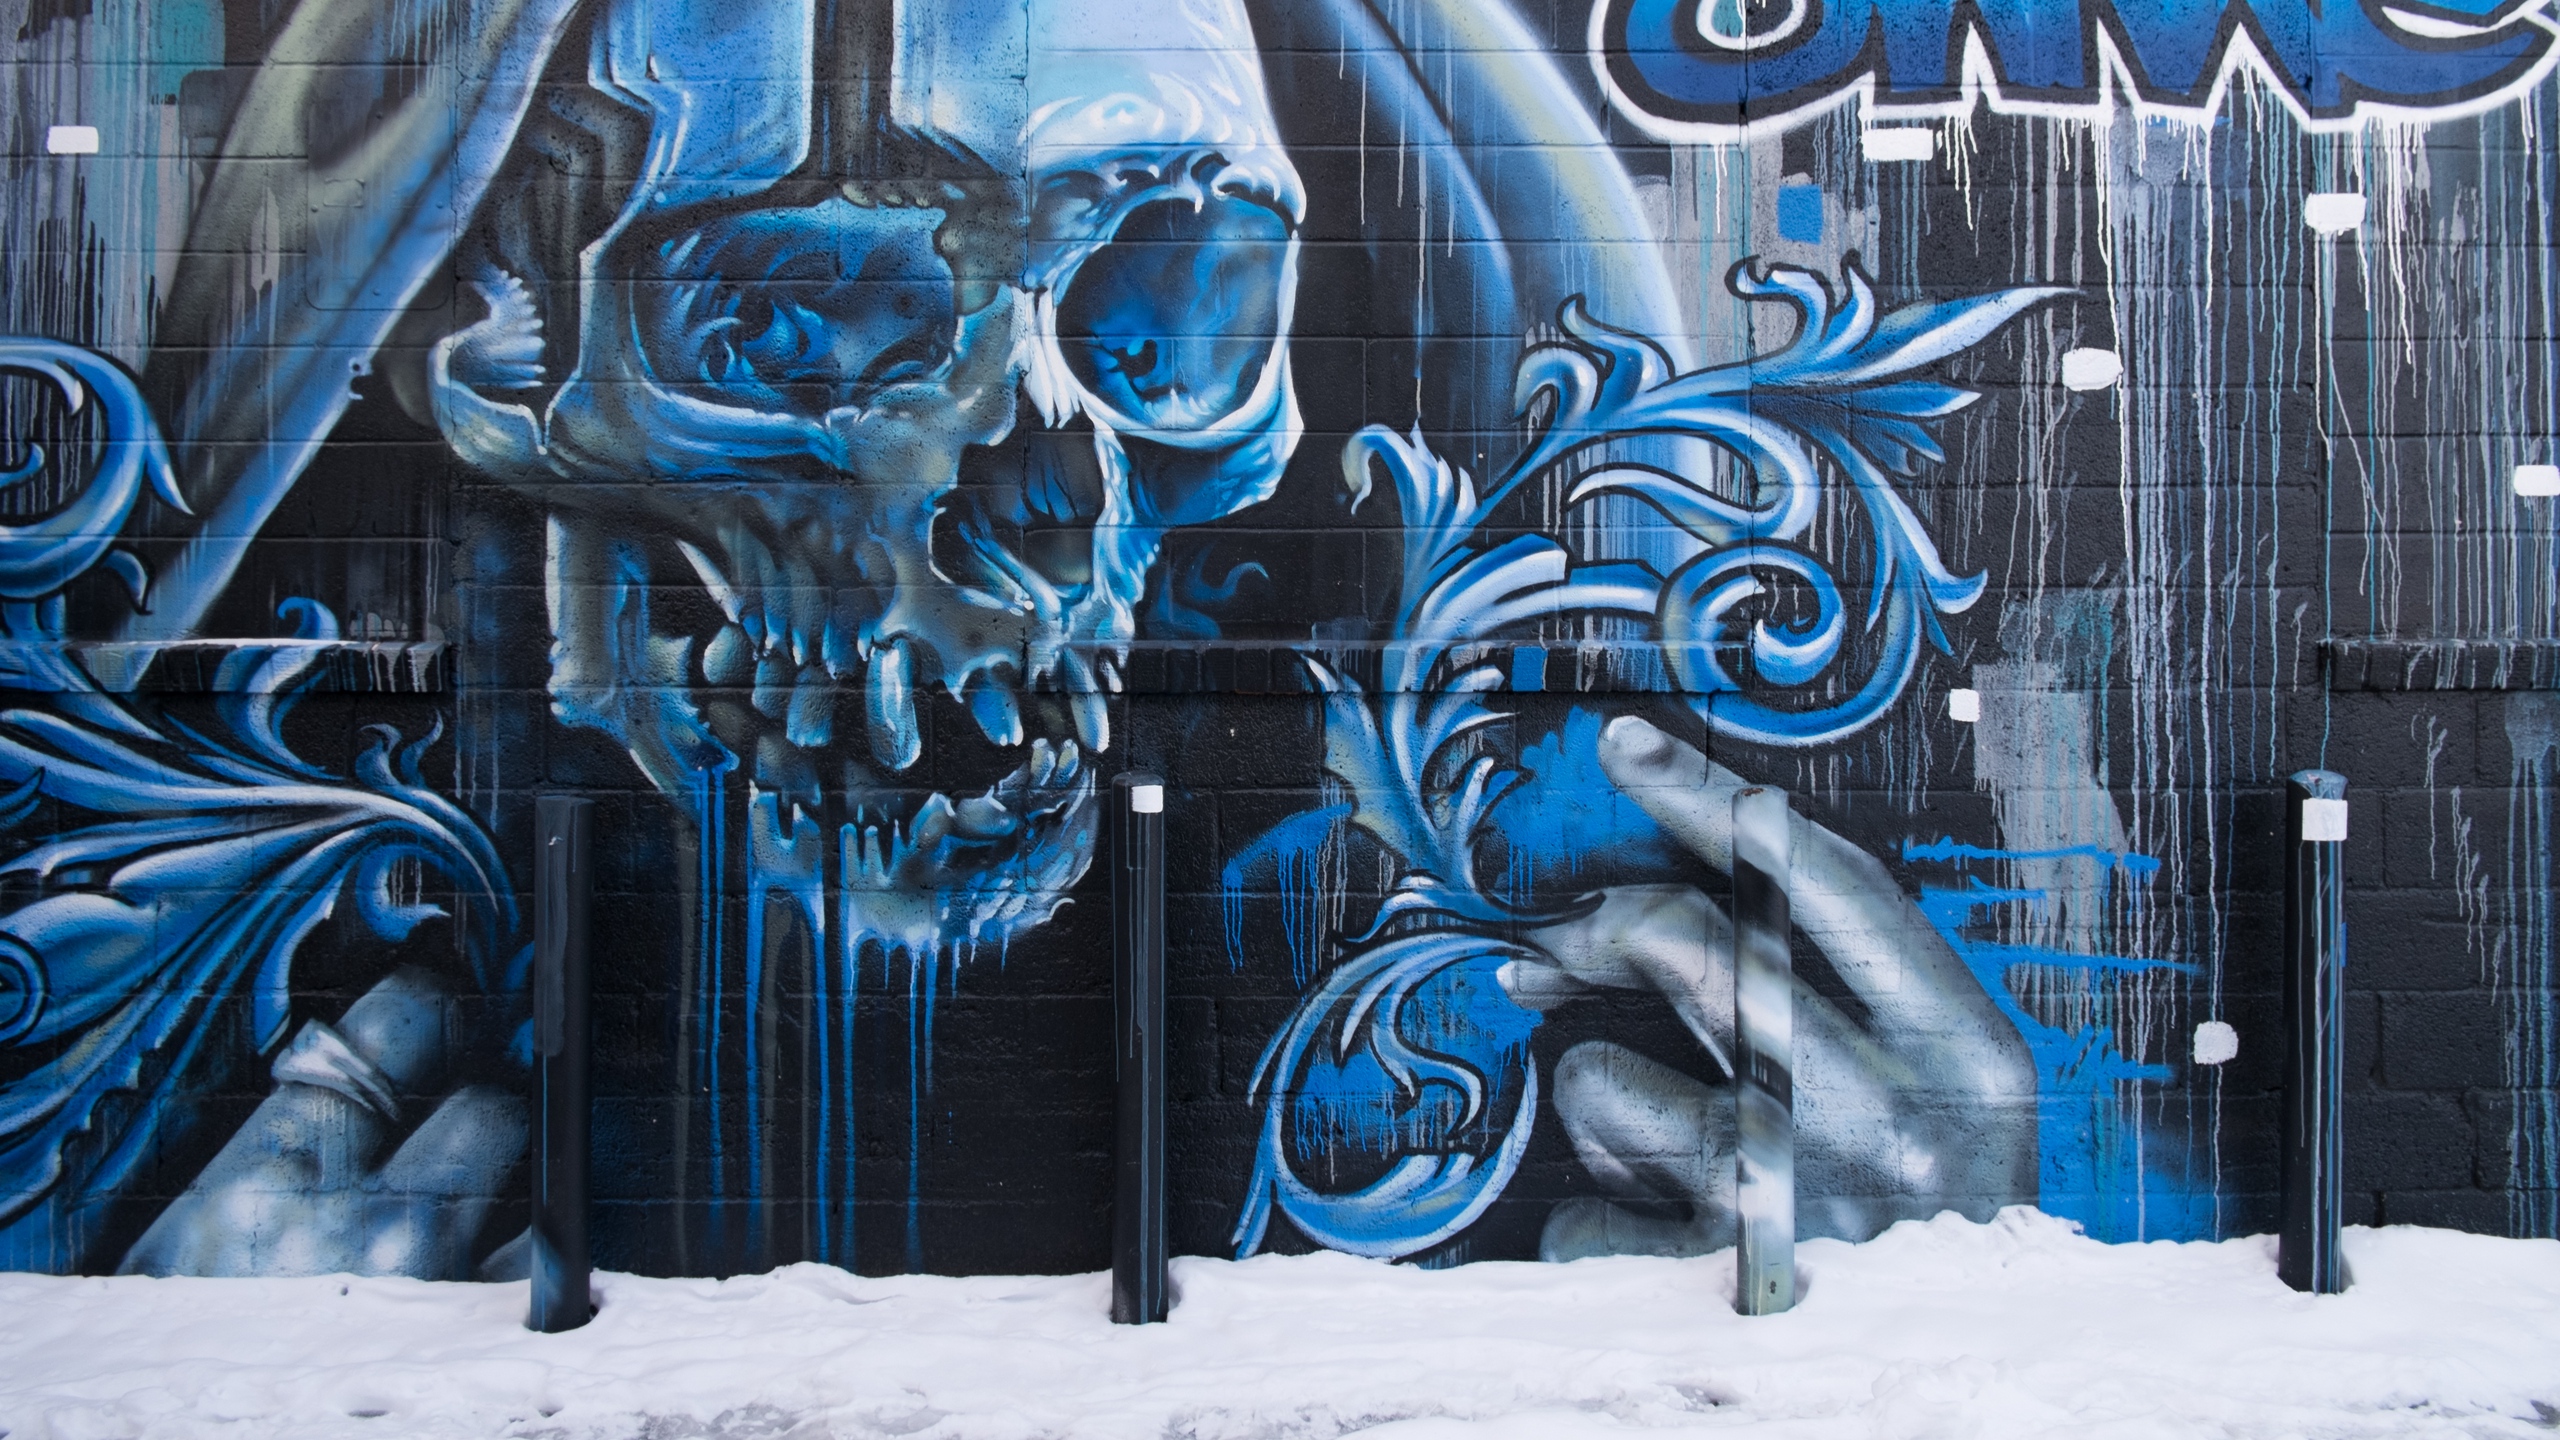 Wallpaper Skull, Graffiti, Street Art, Wall - Graffiti Street Art Background - HD Wallpaper 